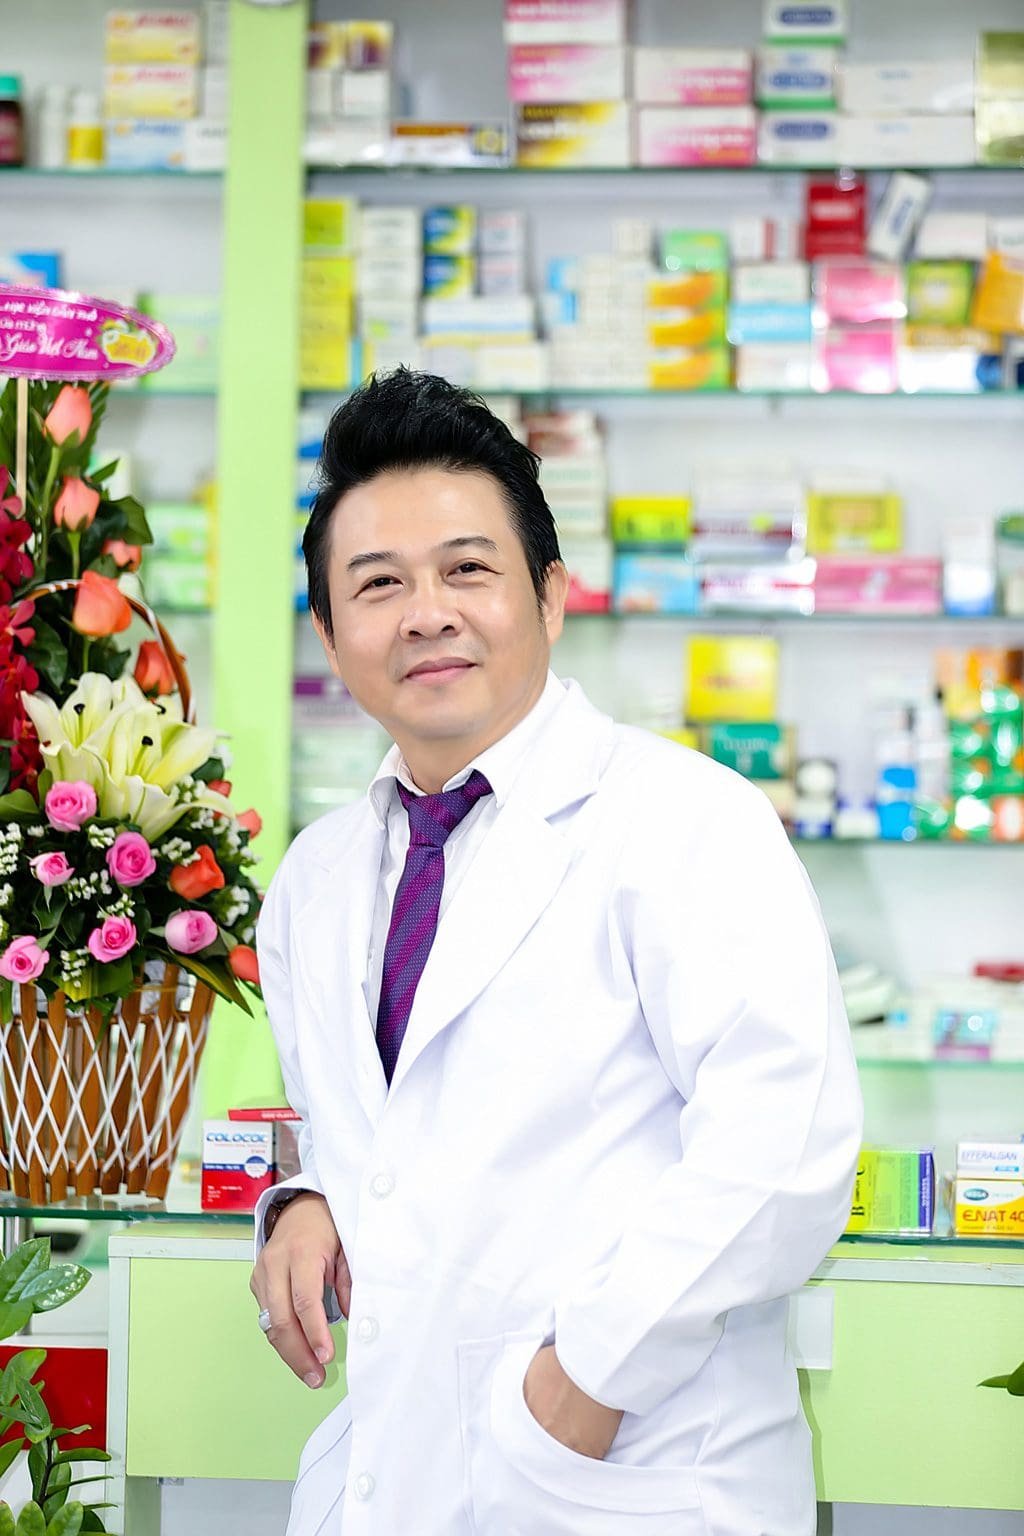 Thay-nhathuoctot-chủ tịch HĐTV Cty Nhà Thuốc Tốt-Truong-khu-vô-trùng- Quản lý điều hành khu thuốc kháng sinh tiêm và thuốc nước công ty Sanofi pharma vn ( Sanofi Aventis )